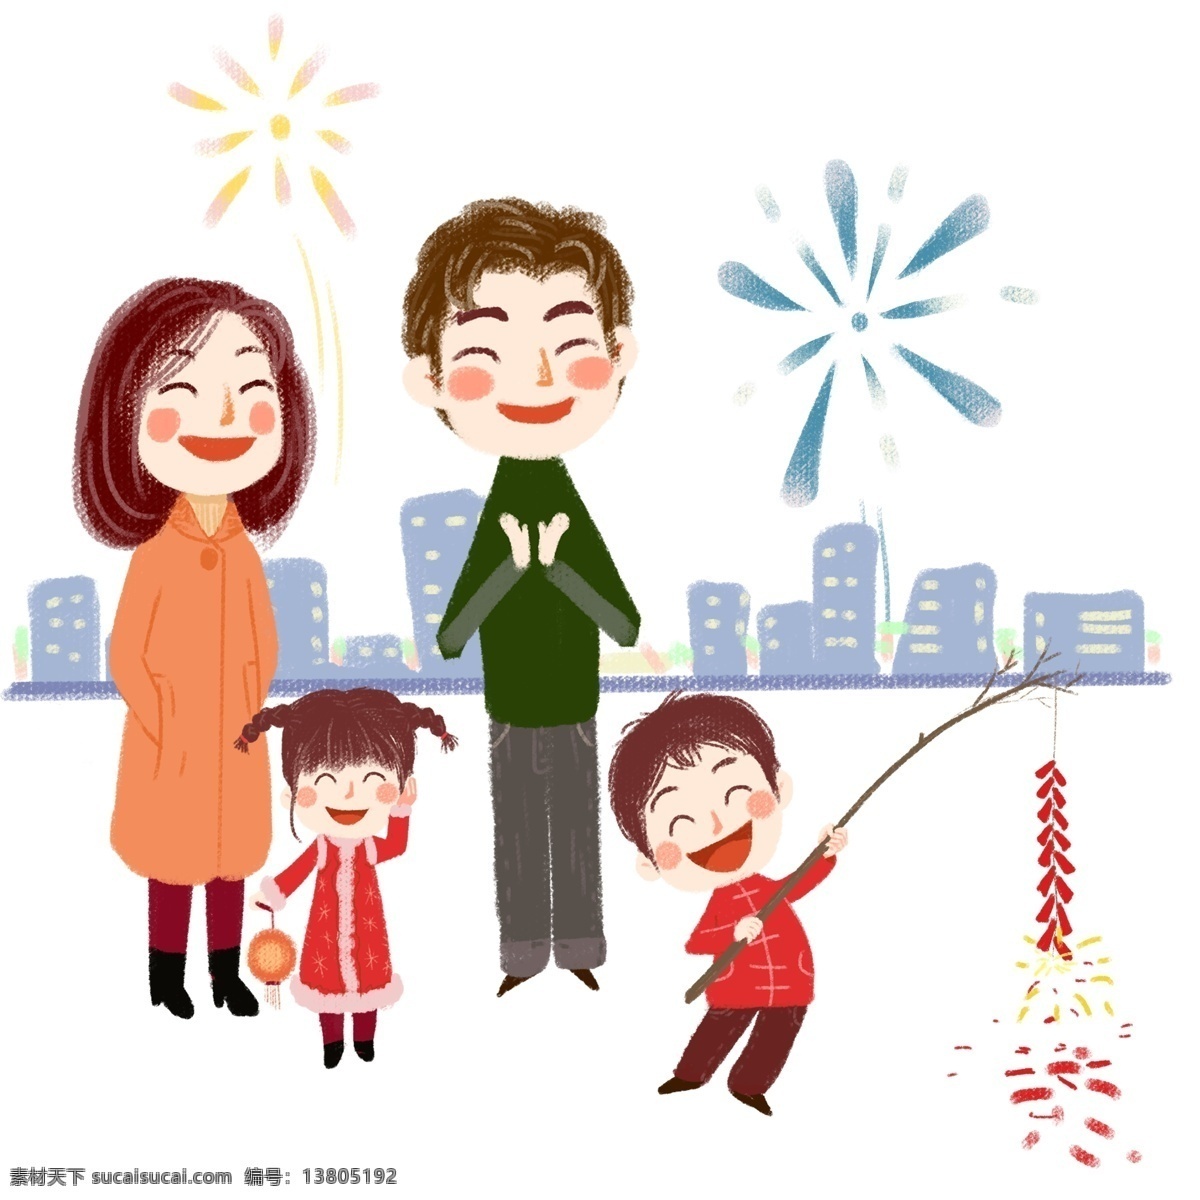 春节 一家人 放 烟花 插画 红色的灯笼 幸福的一家人 团聚插画 鞭炮 爆竹 放鞭炮 手绘卡通